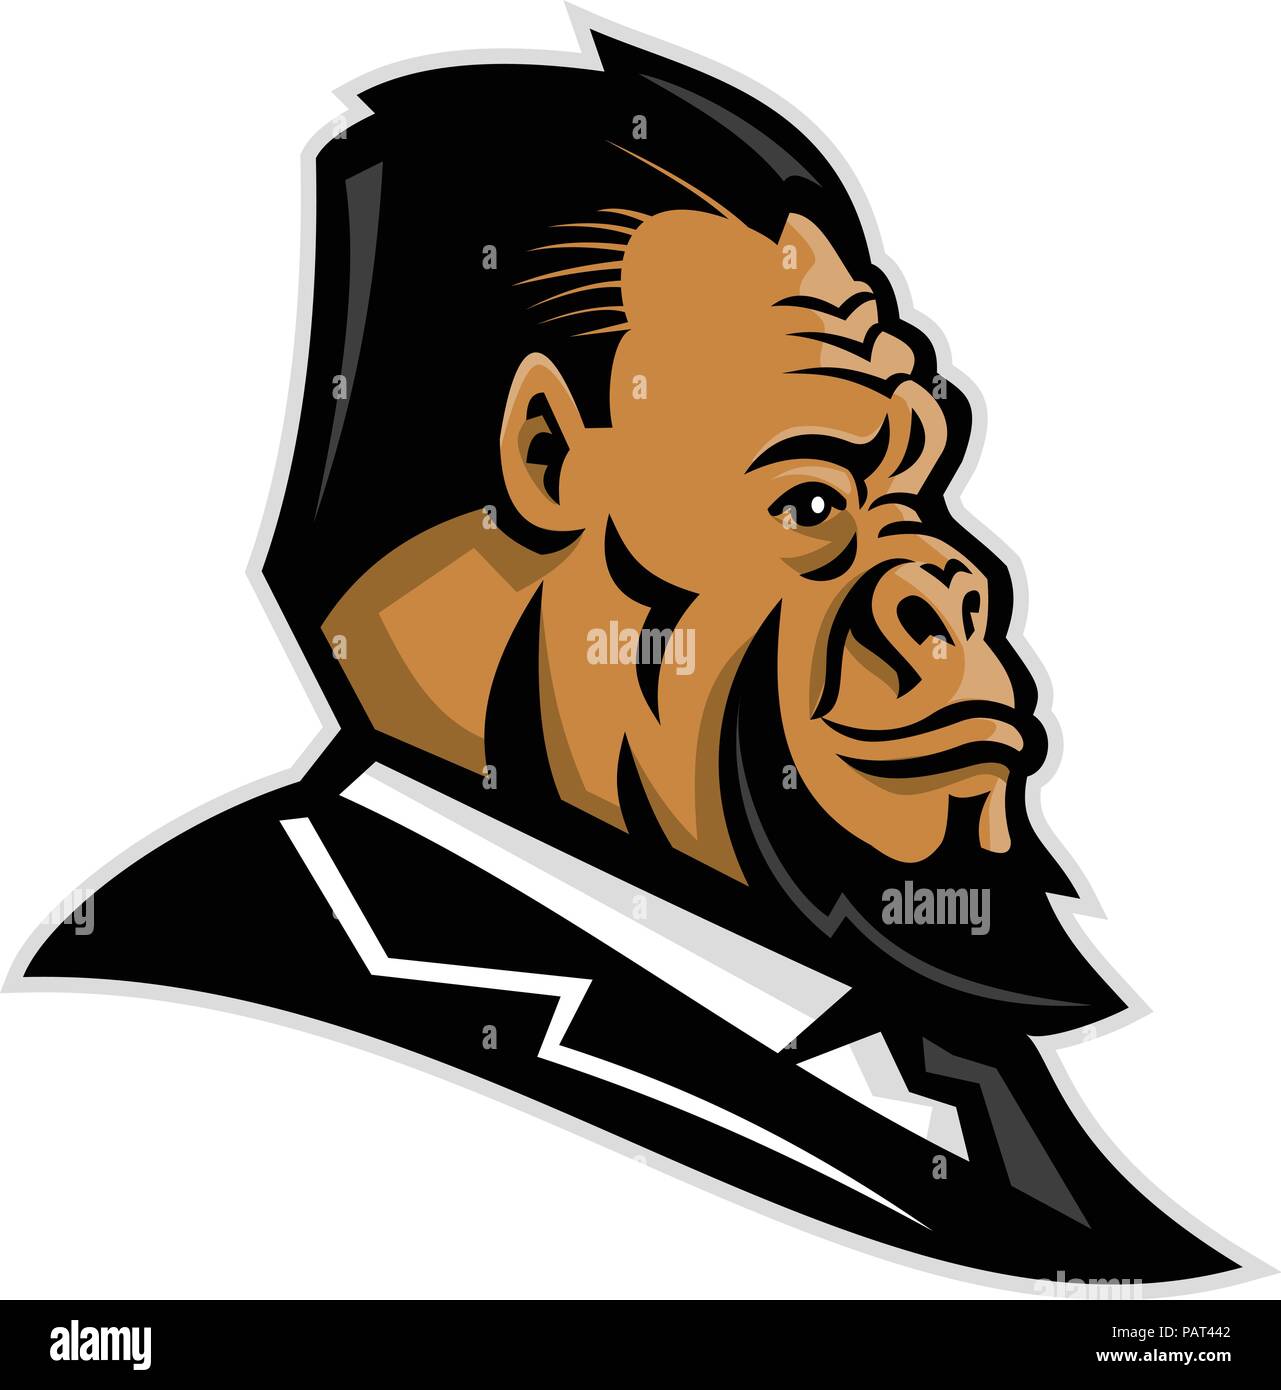 L'icône de mascotte illustration de tête d'un gorille, ape, primate, caveman, ou de Neandertal l'homme primitif, portant costume et cravate vue d'affaires Illustration de Vecteur